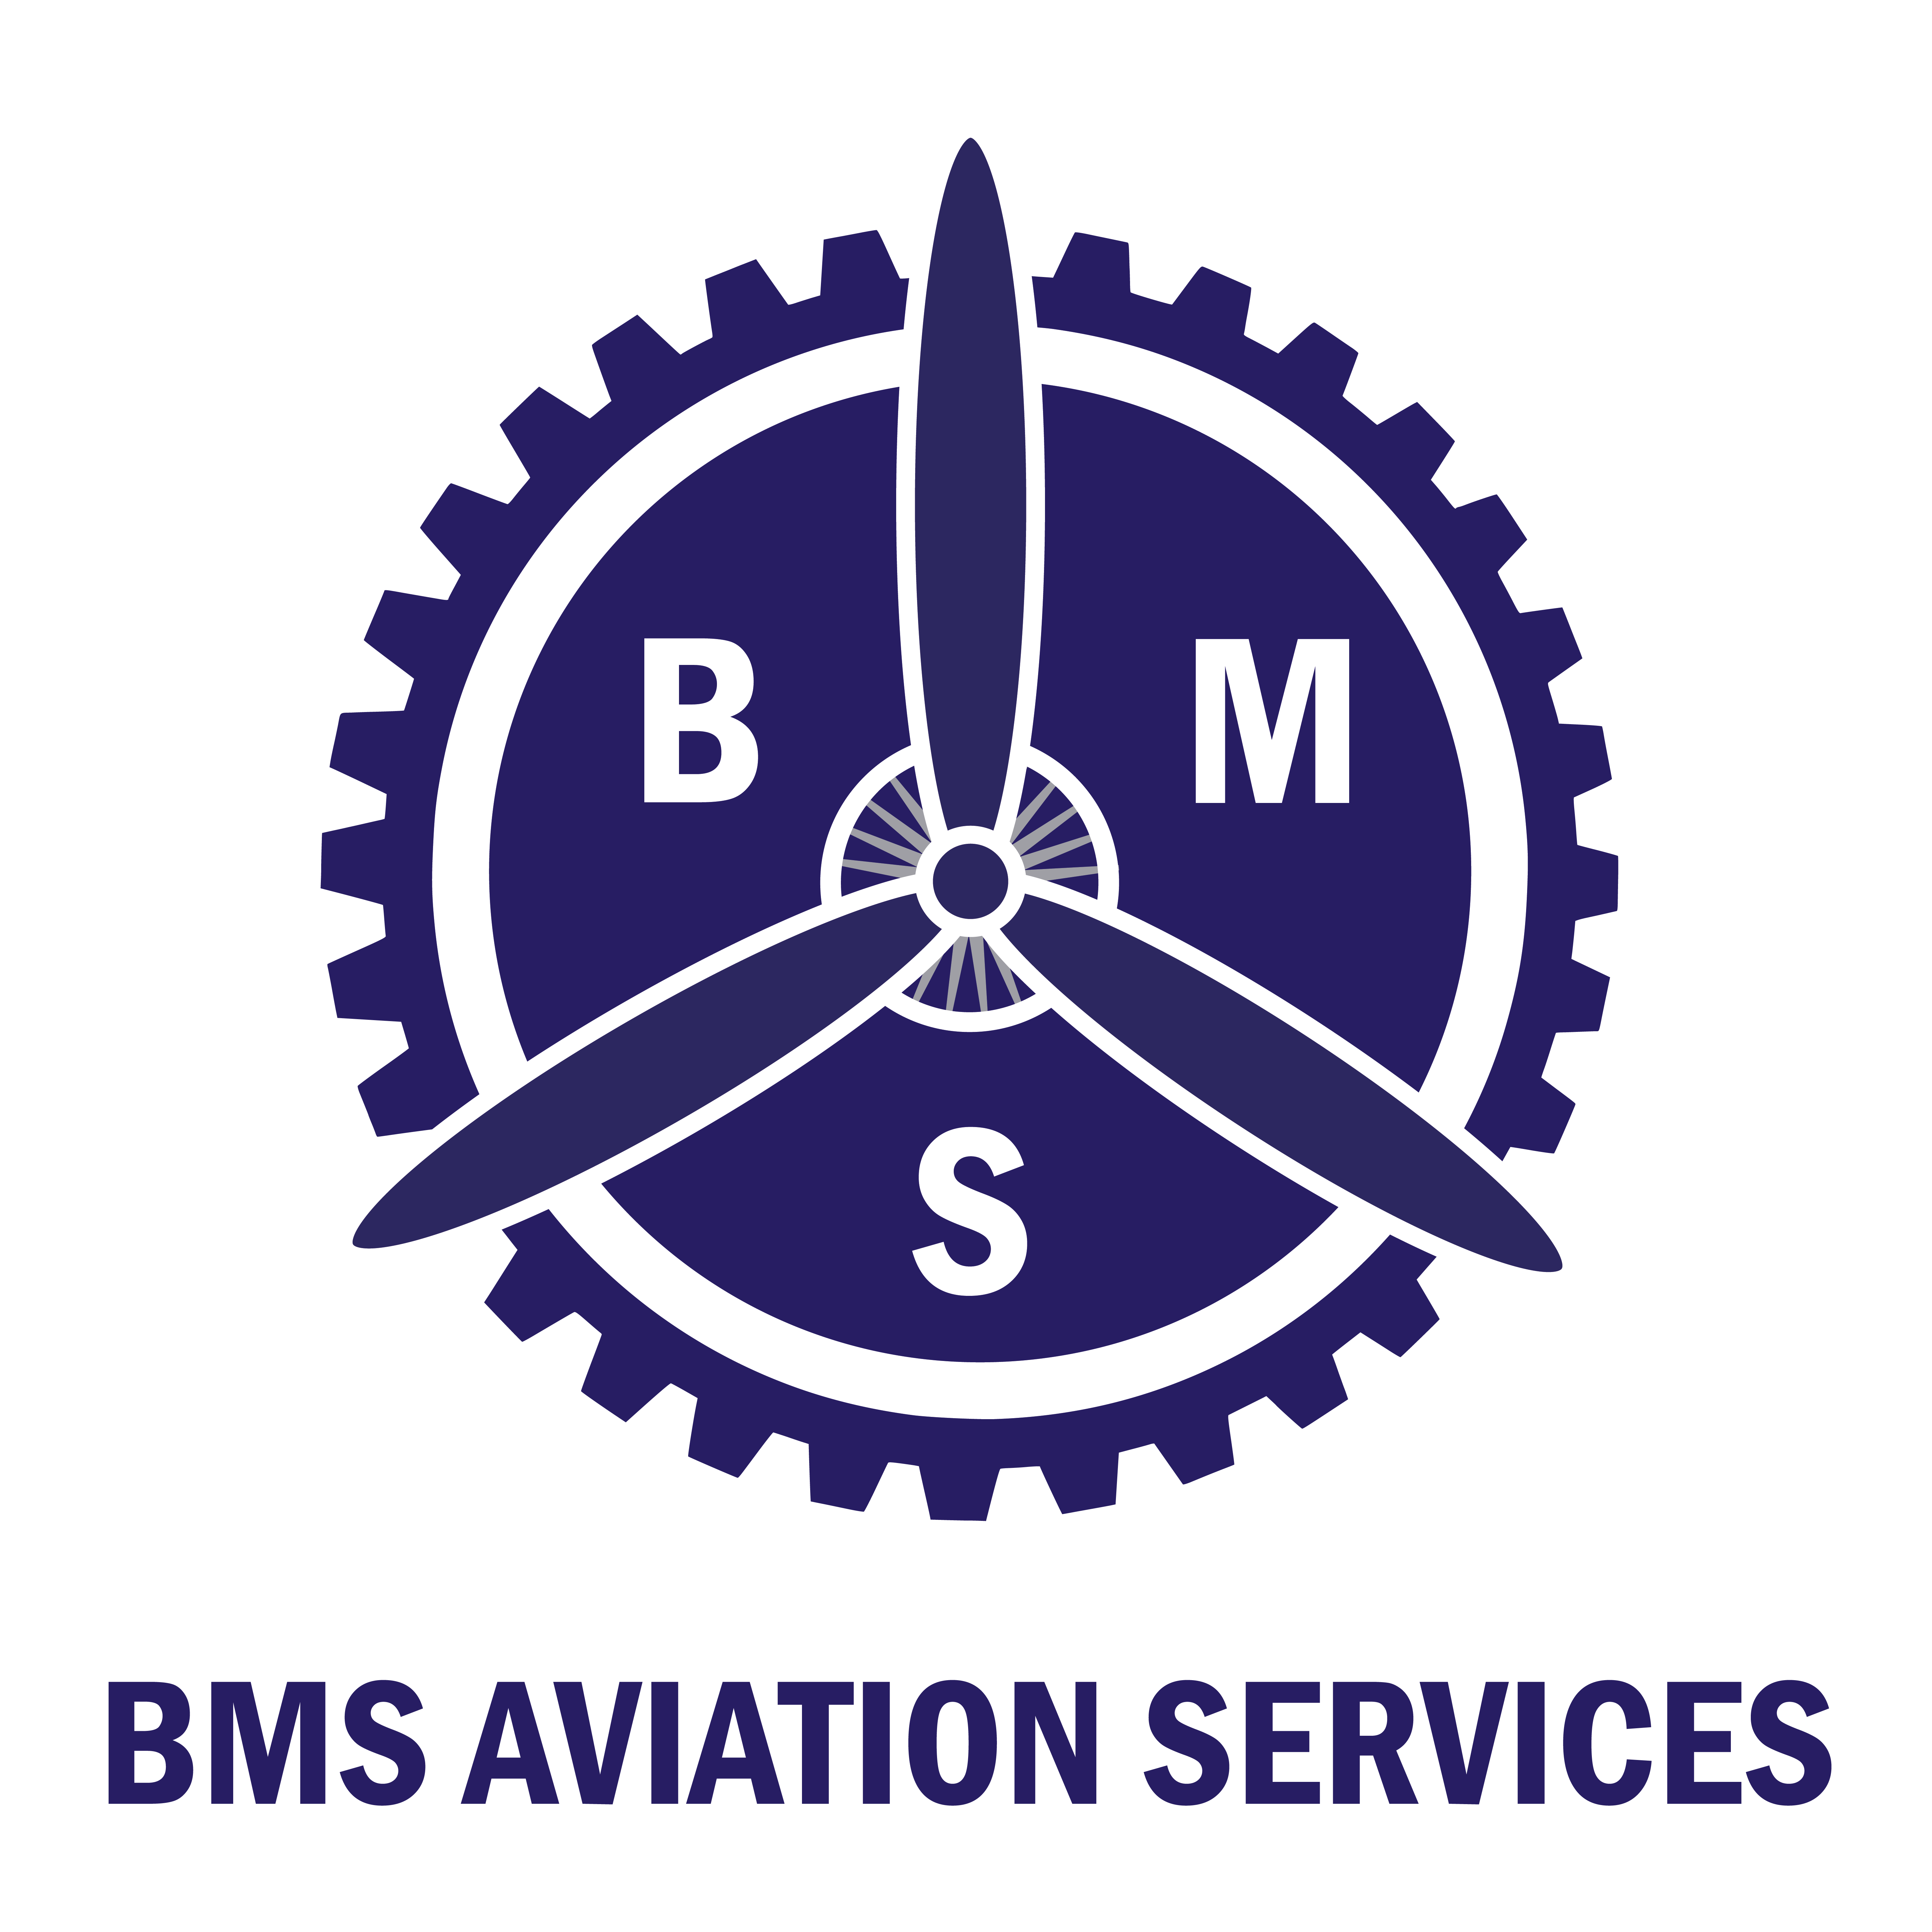 BMS AVIATION SERVICE